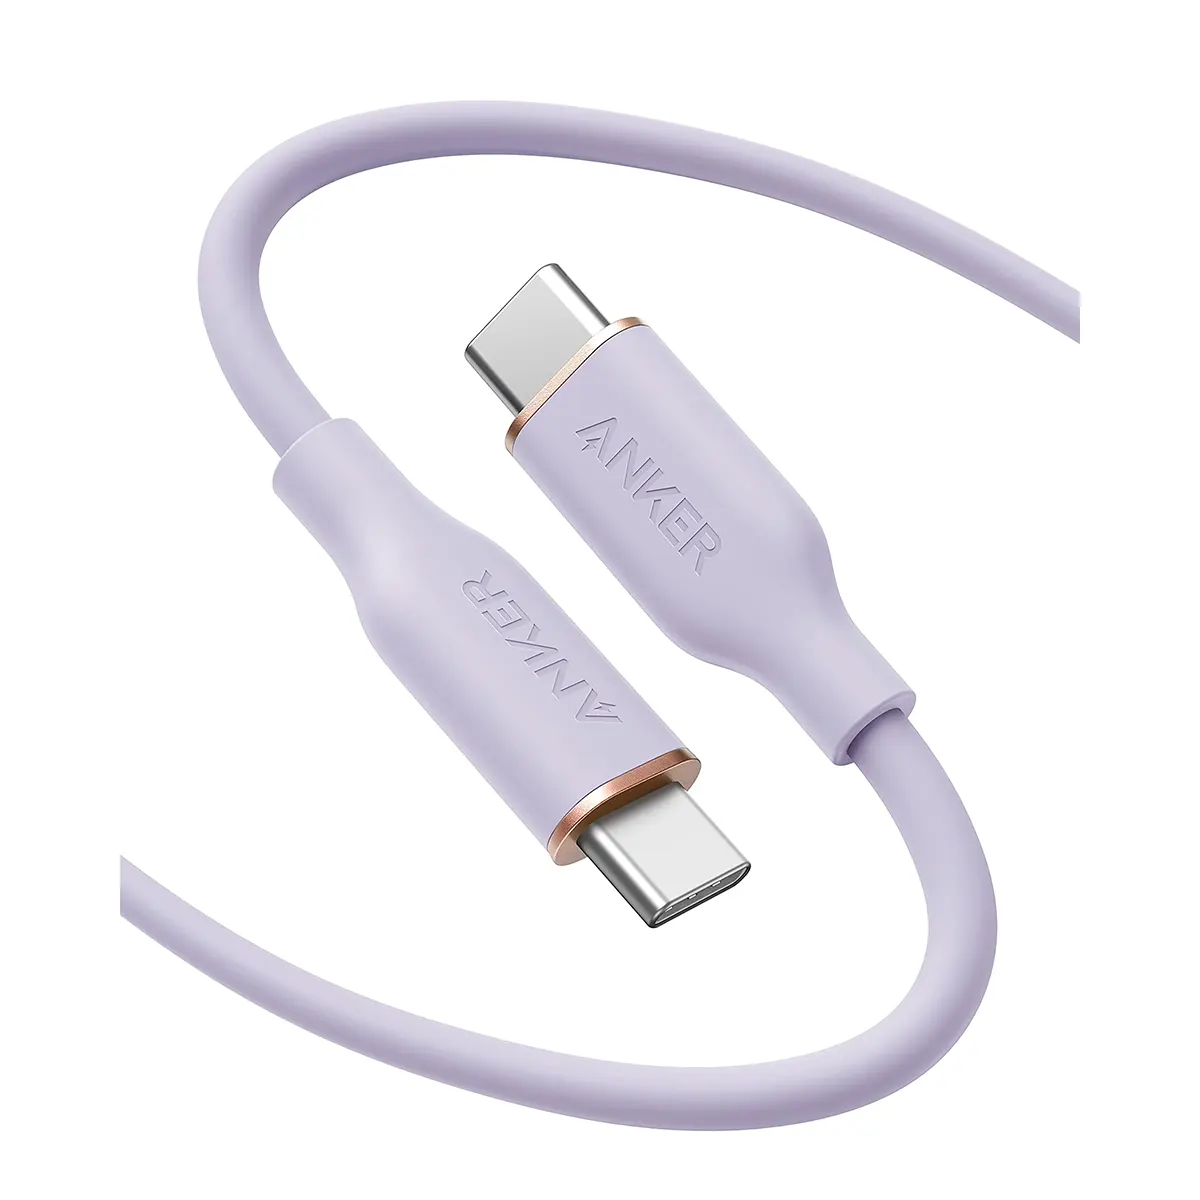 کابل USB-C به USB-C انکر 0.9 متر مدل Anker 643 0.9m USB-C to USB-C 100W Cable (A8552) رنگ بنفش